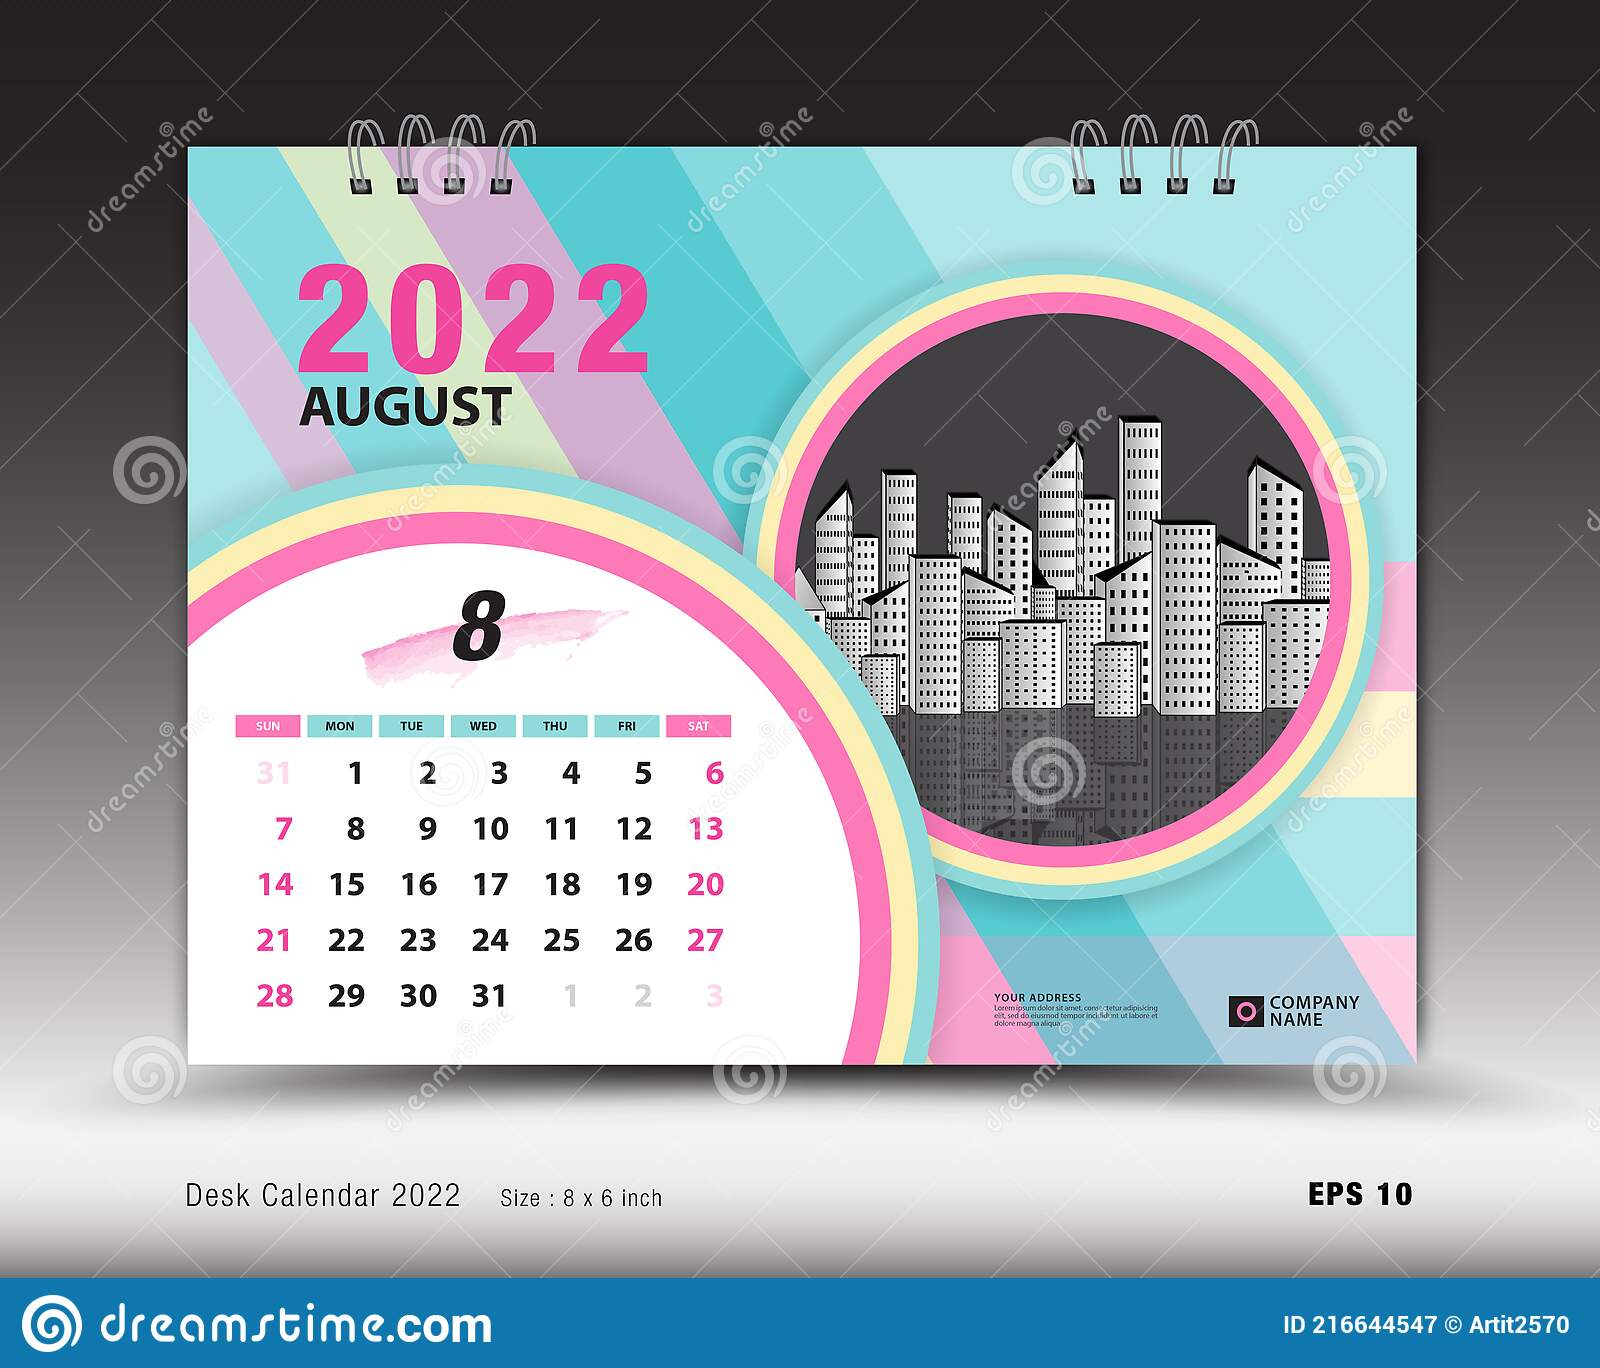 Calendar 2022 Template-August Month Layout, Desk Calendar